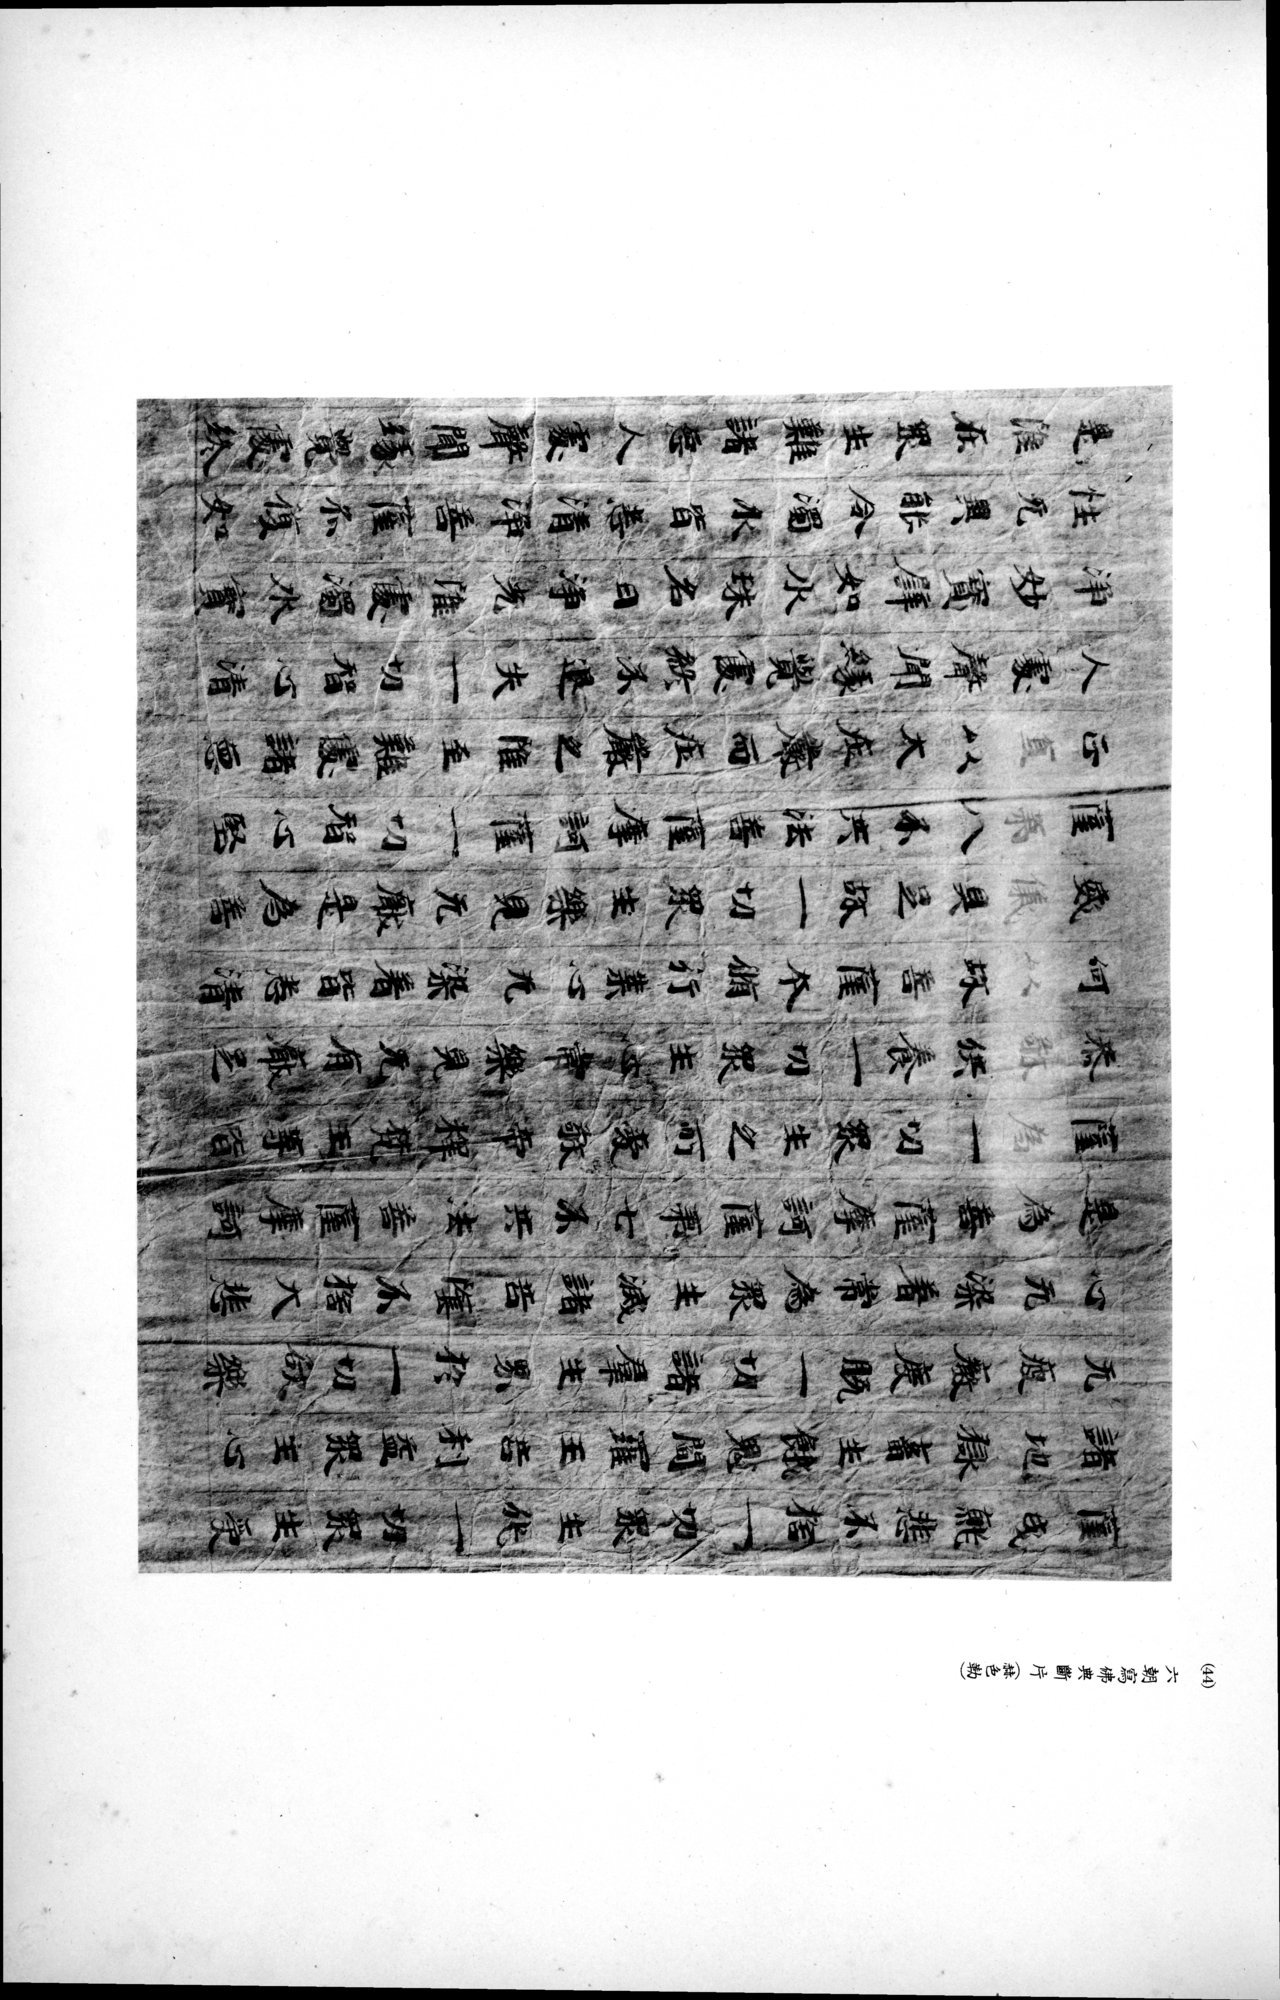 西域考古図譜 : vol.2 / Page 103 (Grayscale High Resolution Image)